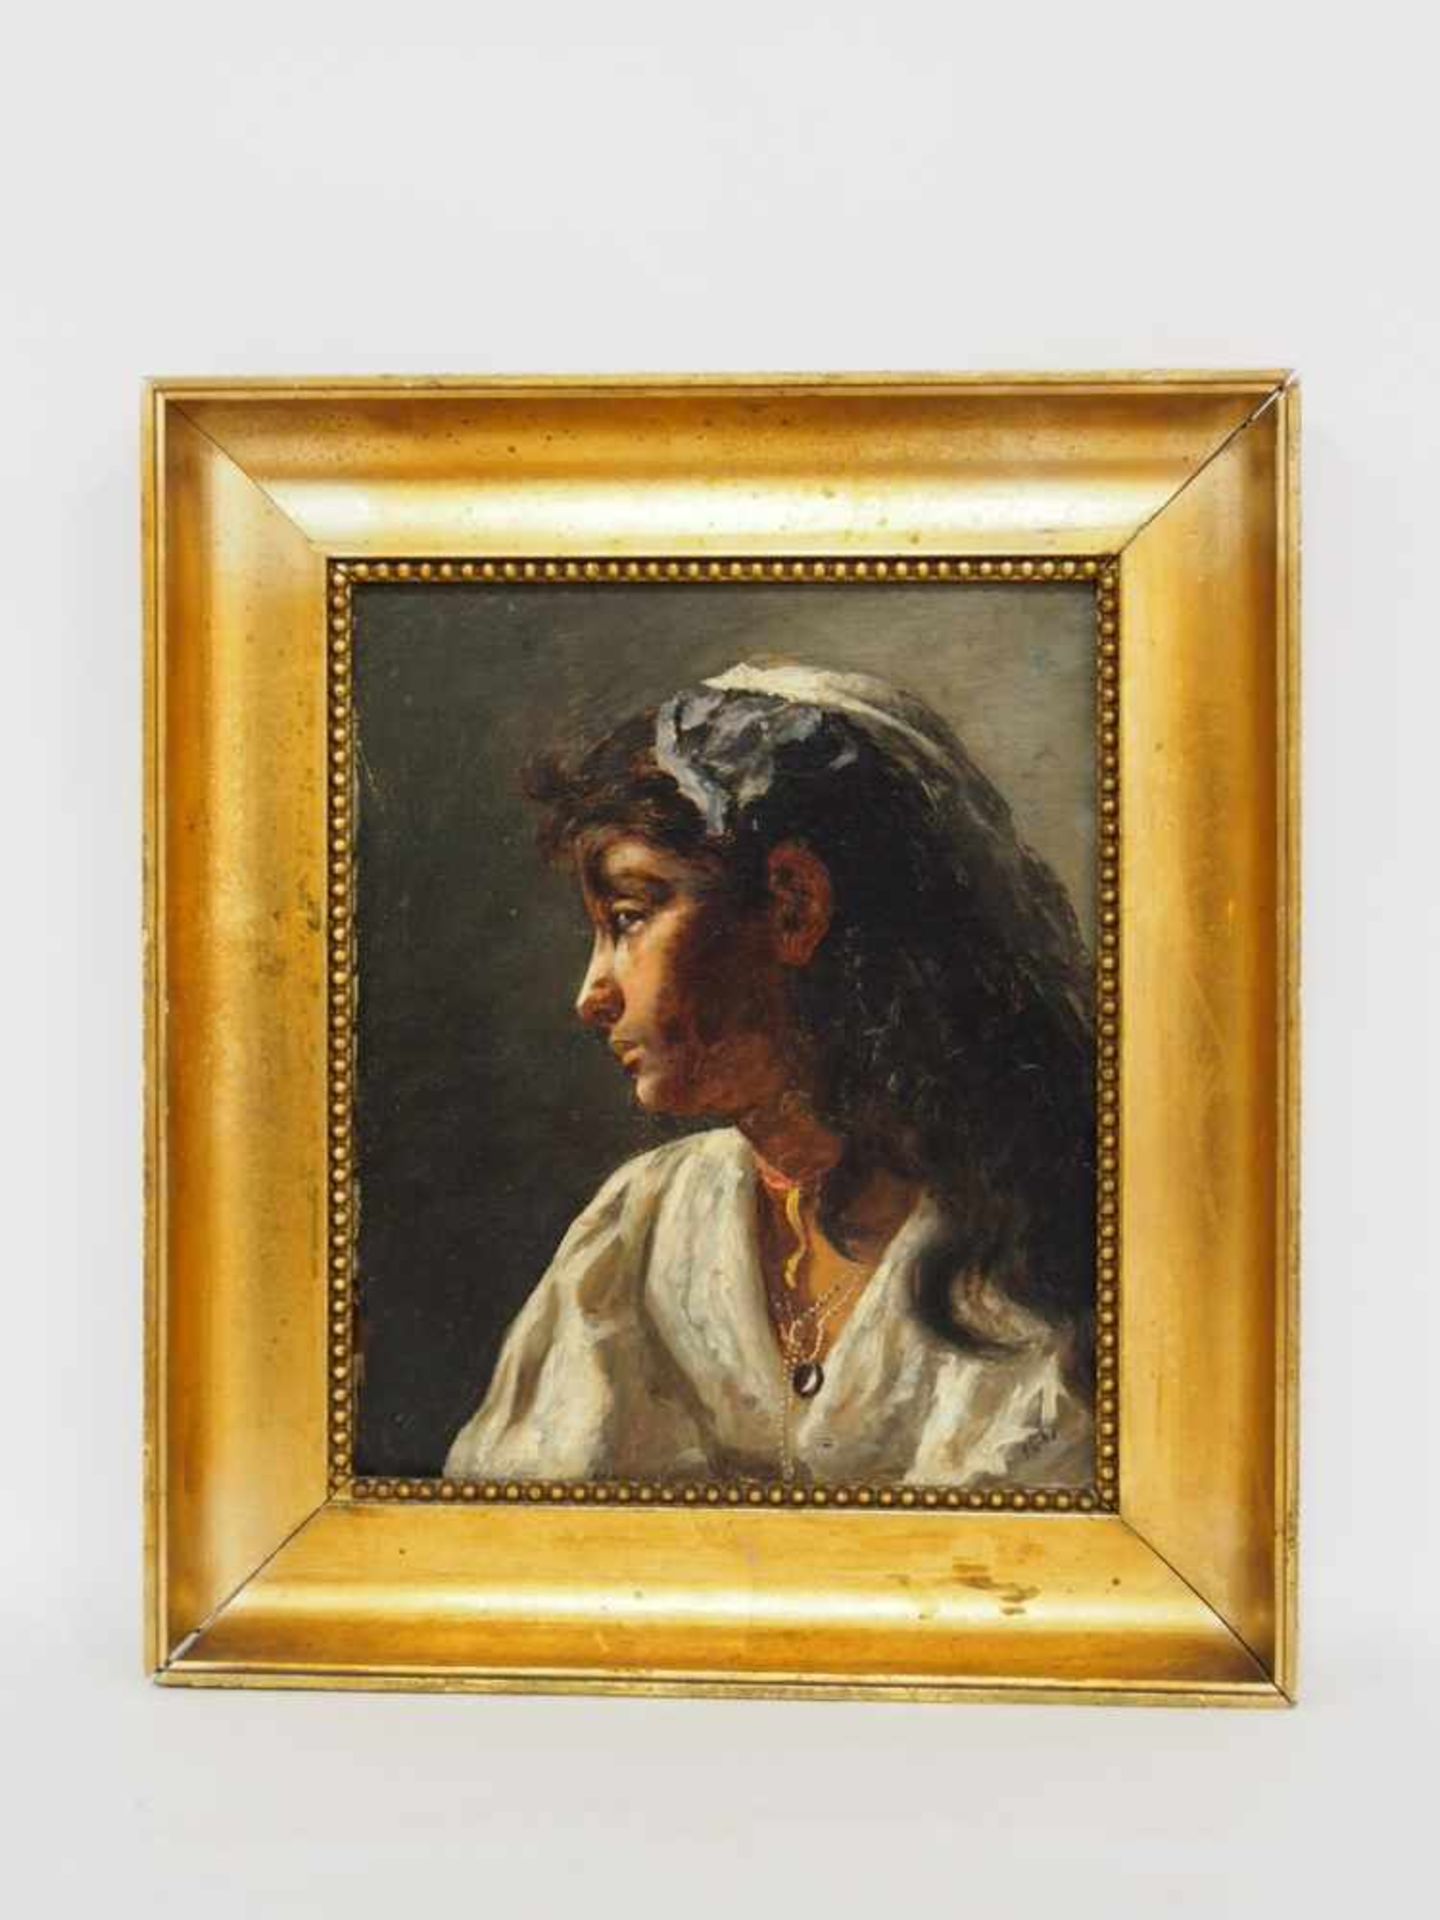 ITALIENISCHER MEISTER19. Jh.Porträt einer jungen NeapolitanerinÖl auf Leinwand, datiert 1837 unten - Image 2 of 2